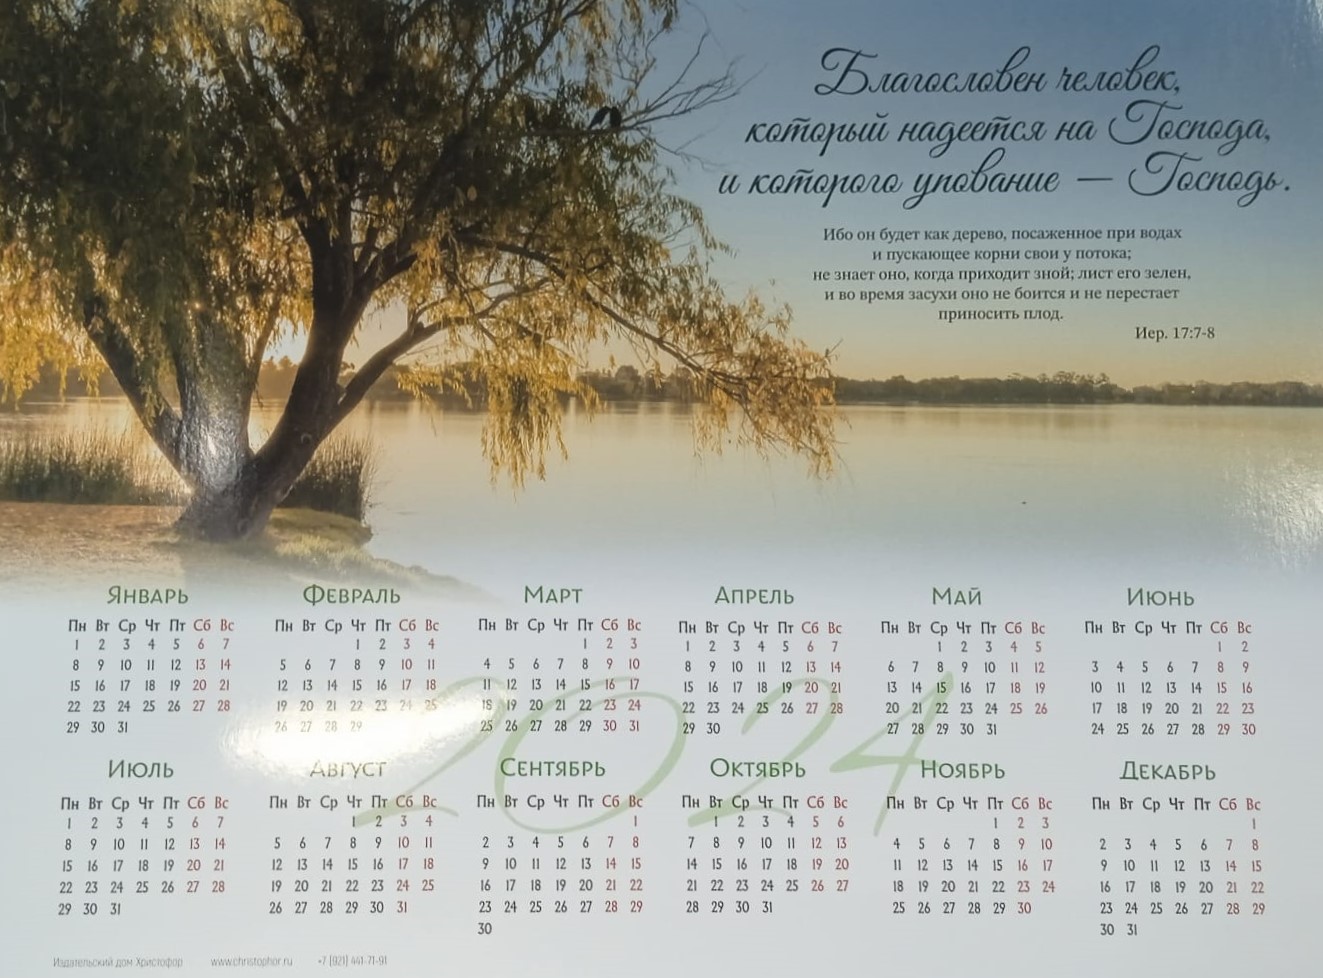 Календарь листовой "Благословен человек" Христофор 34х25